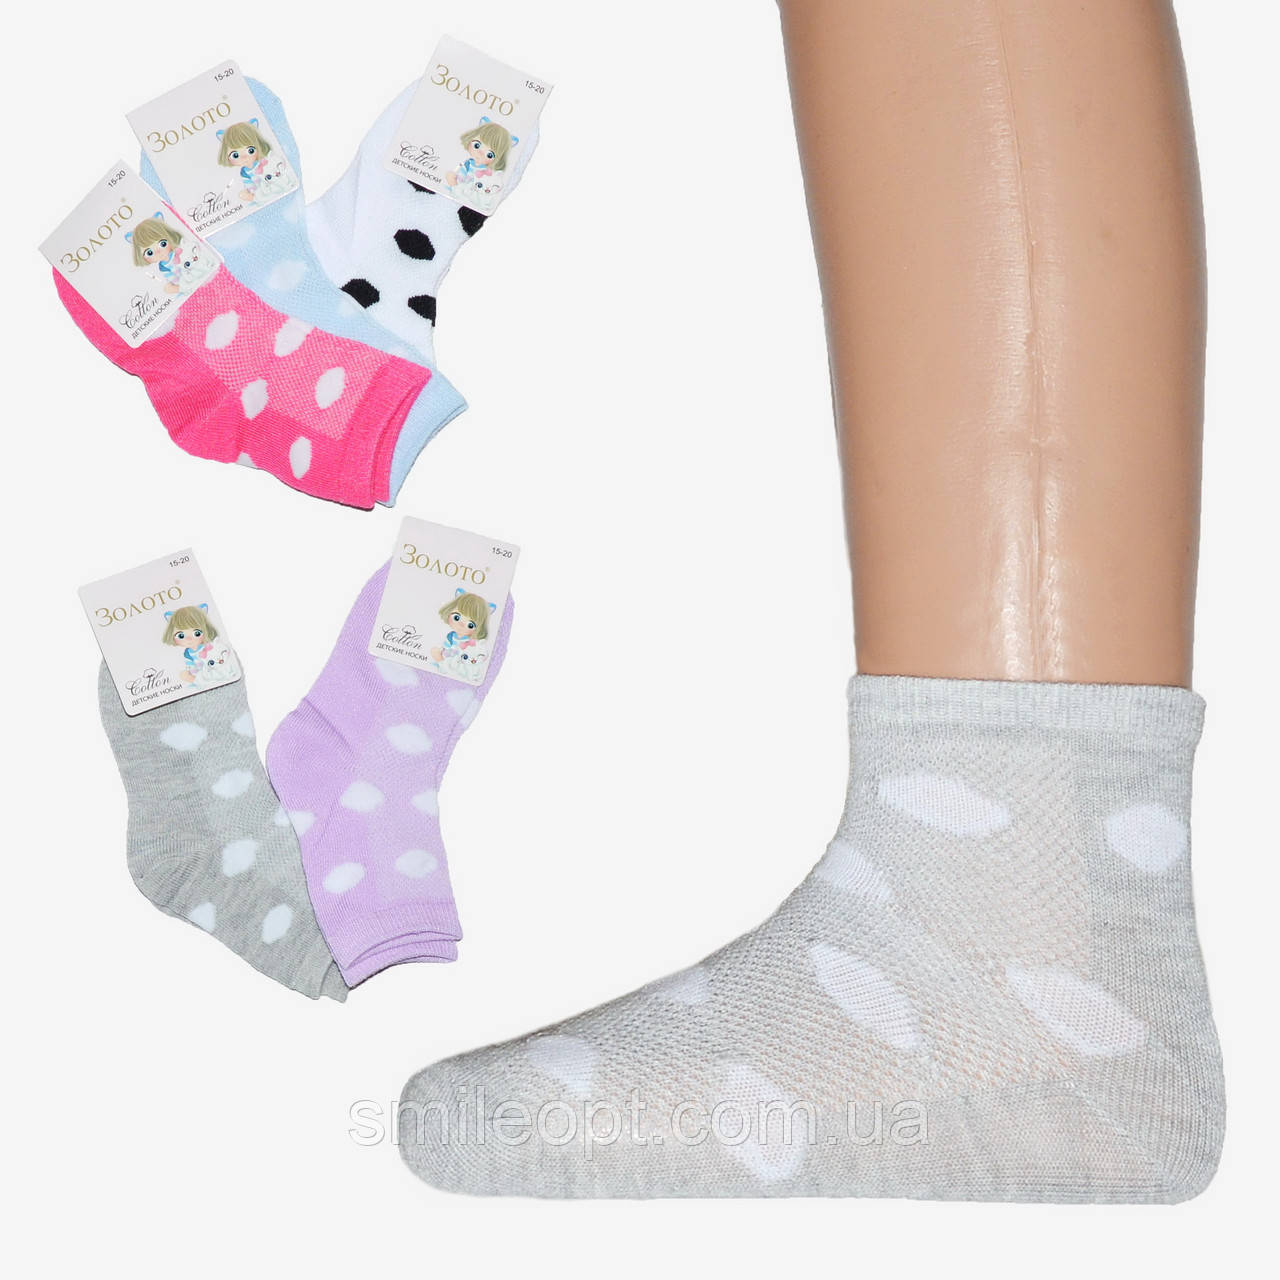 Шкарпетки дитячі сіточка в горошок (ND41/01) 20-25